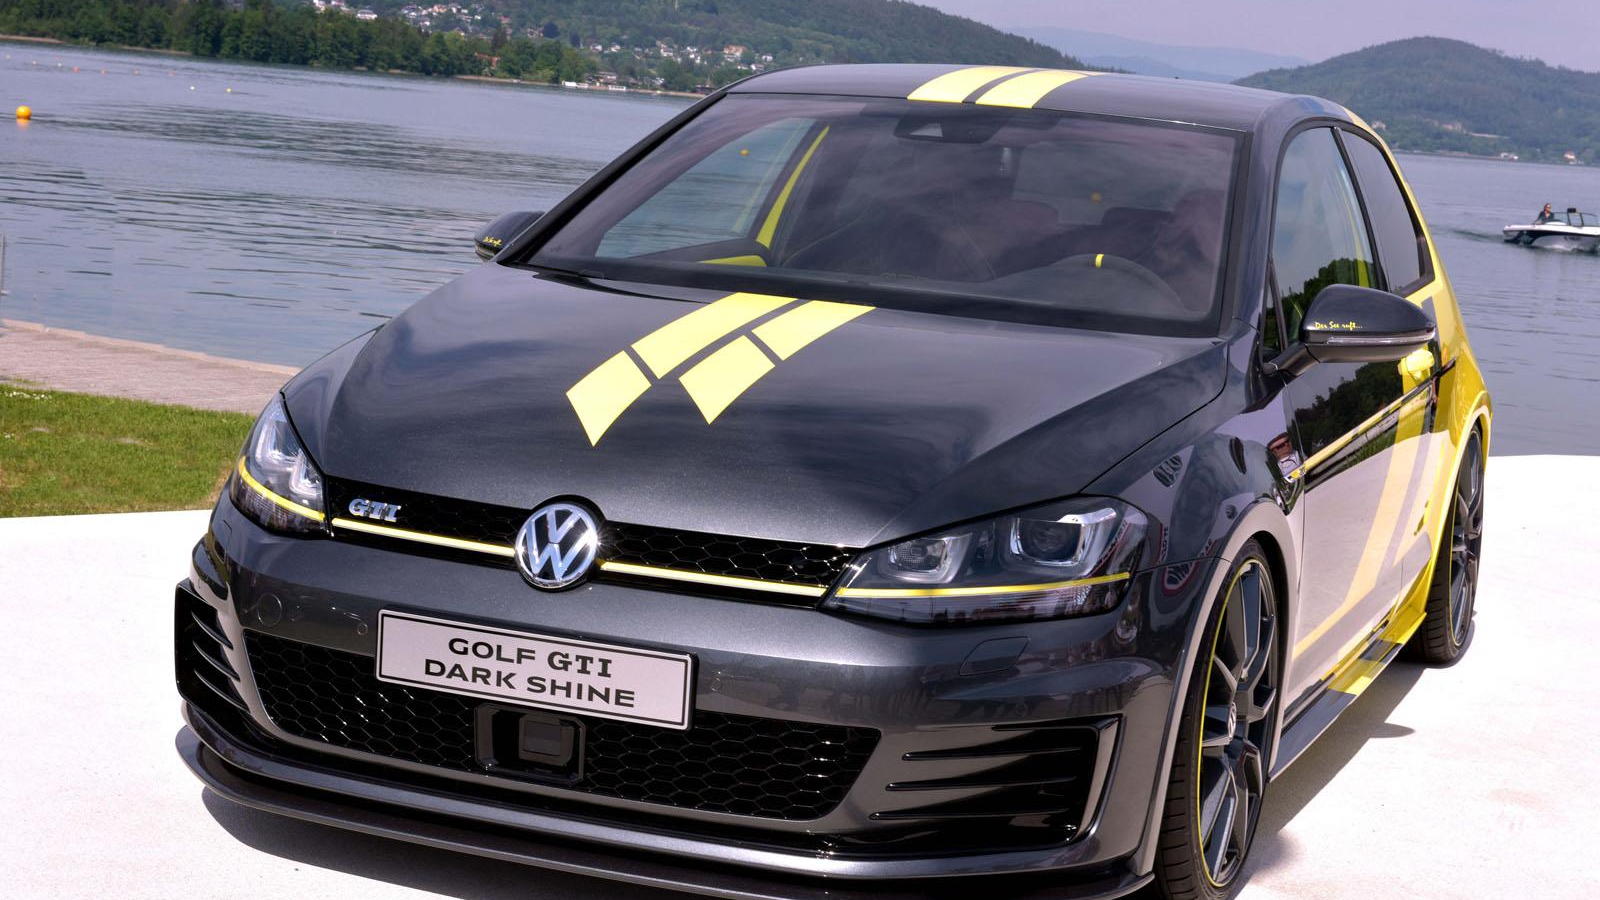 Volkswagen GTI Dark Shine concept